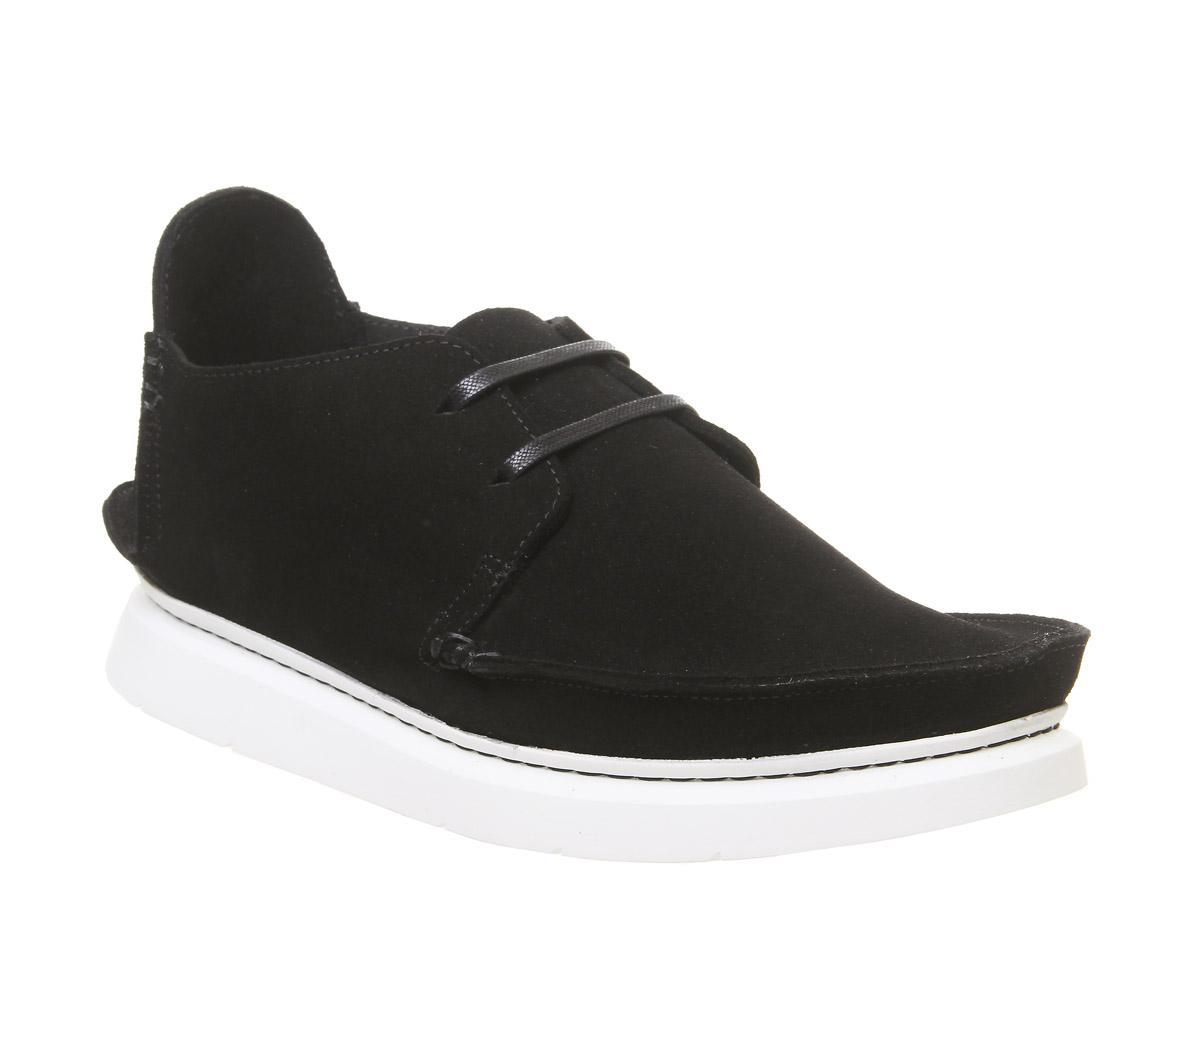 Clarks Originals Seven Shoes Black 